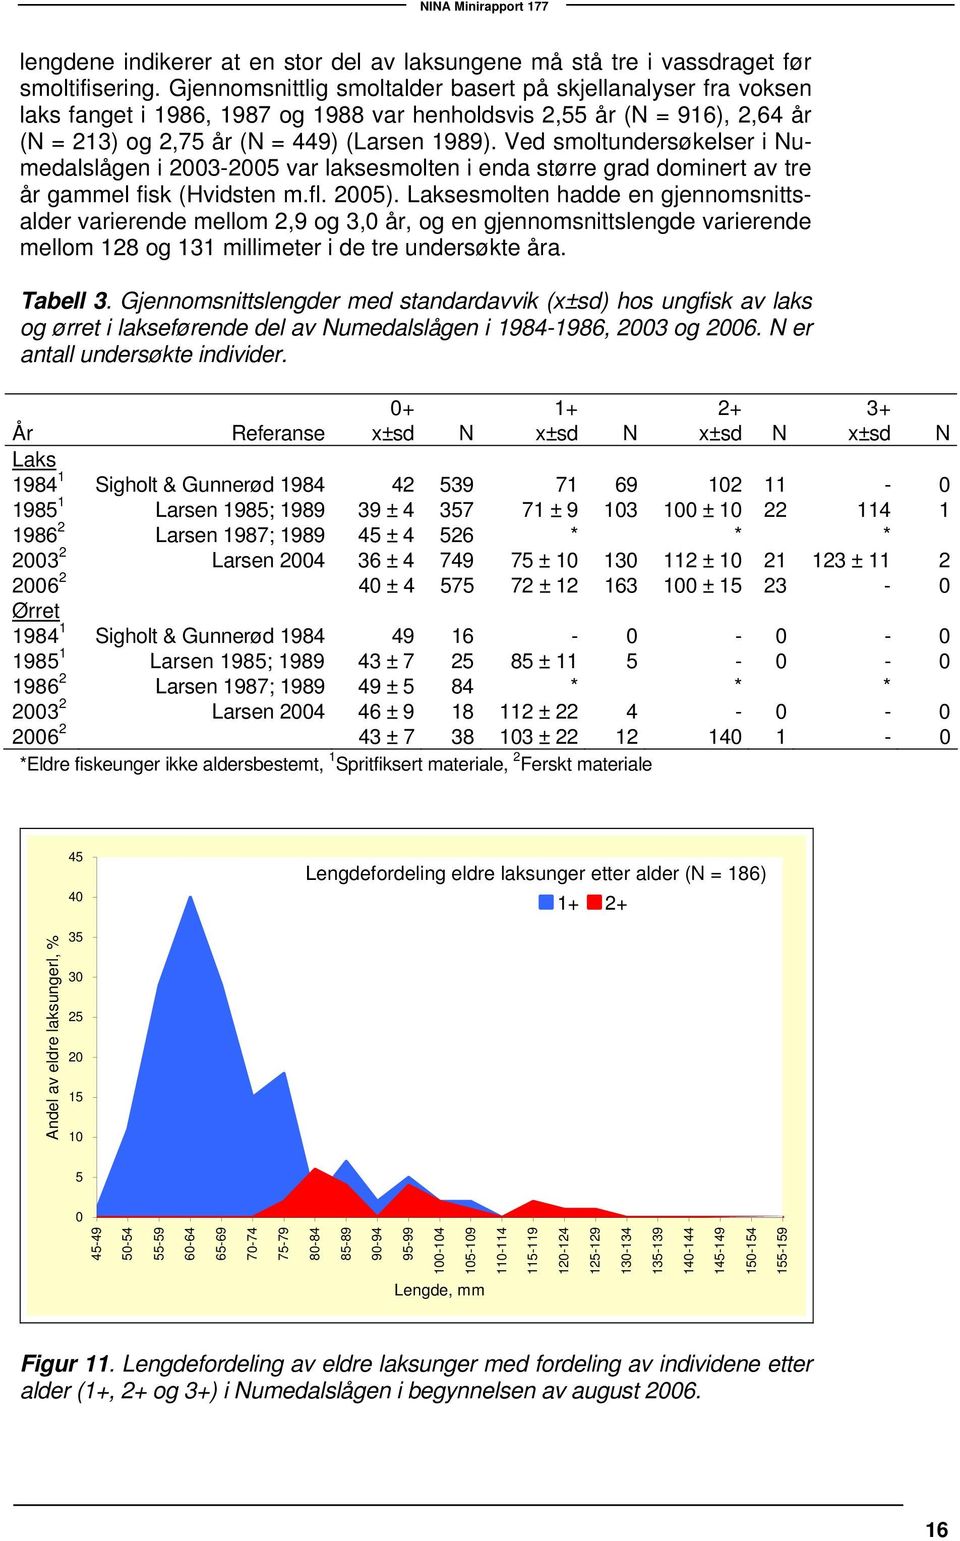 Ved smoltundersøkelser i Numedalslågen i 23-25 var laksesmolten i enda større grad dominert av tre år gammel fisk (Hvidsten m.fl. 25).